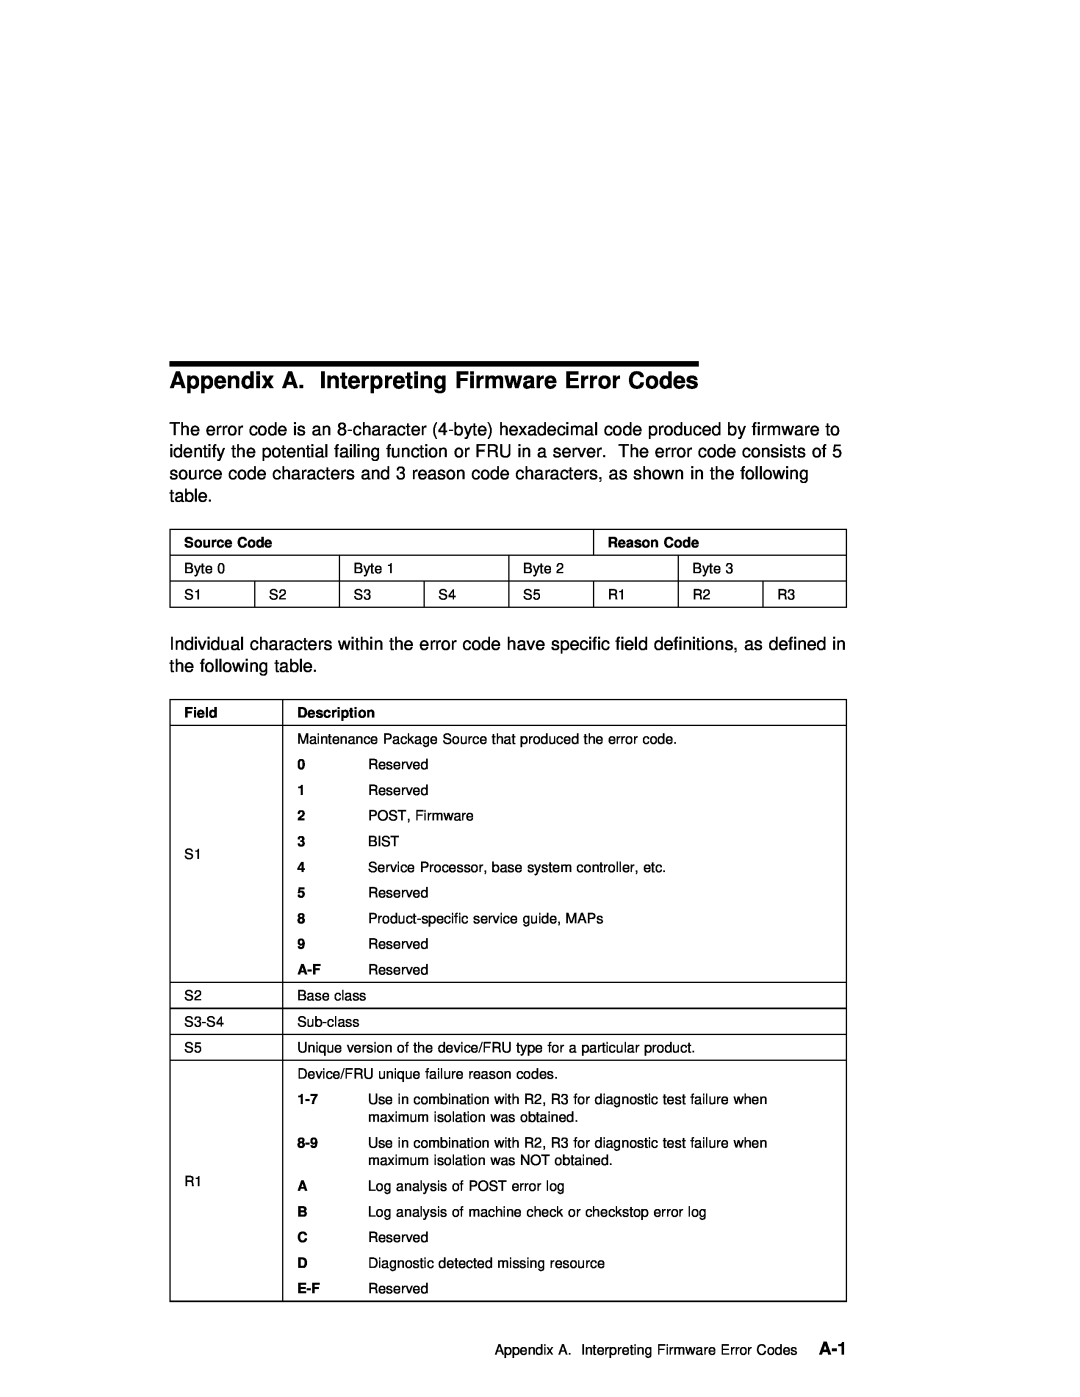 IBM B50 manual Appendix A. Interpreting Firmware Error Codes 